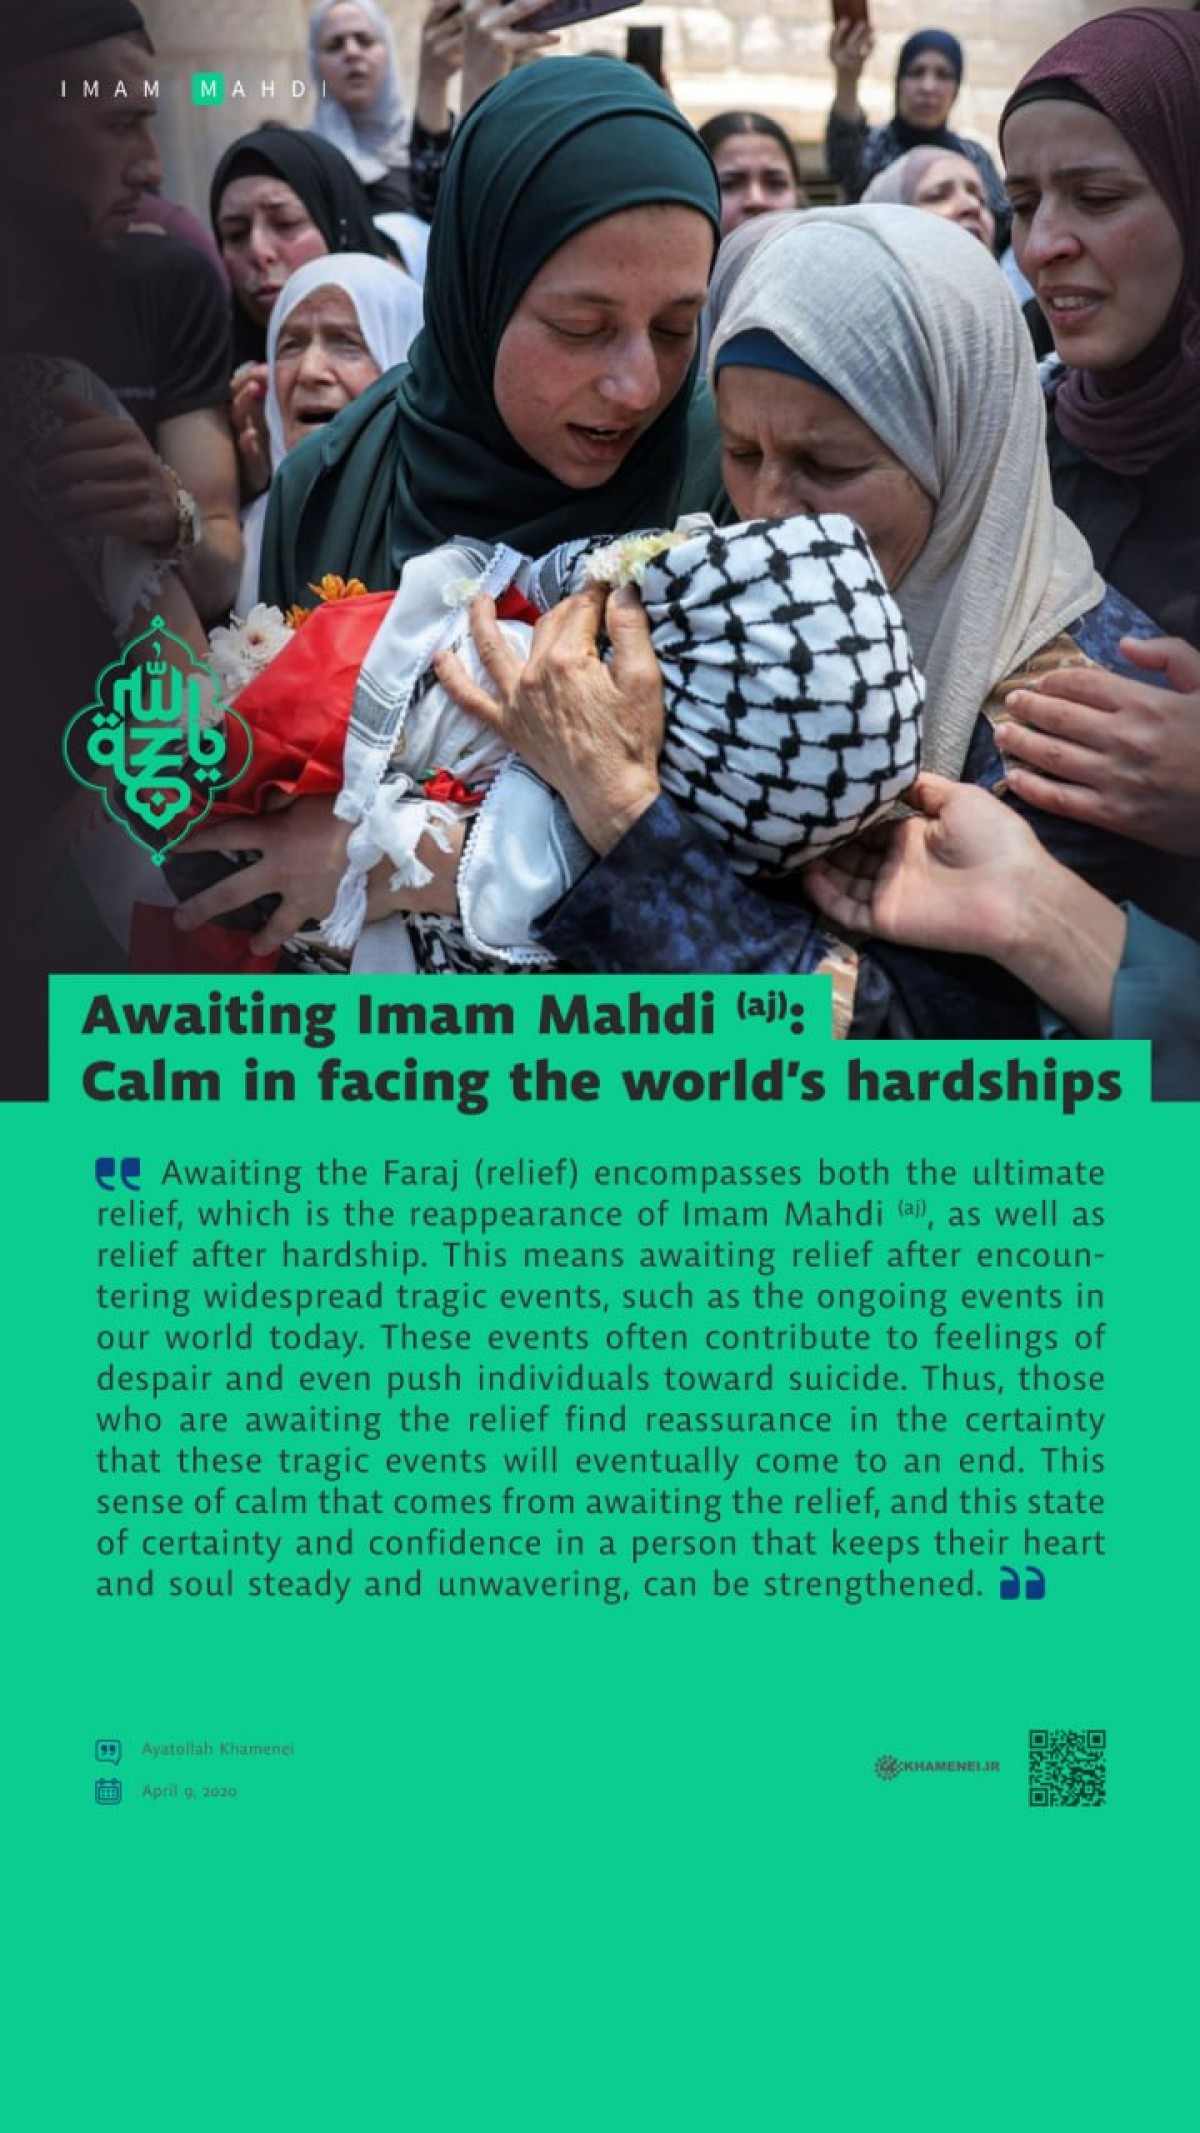 Awaiting Imam Mahdi (aj): Calm in facing the world’s hardships